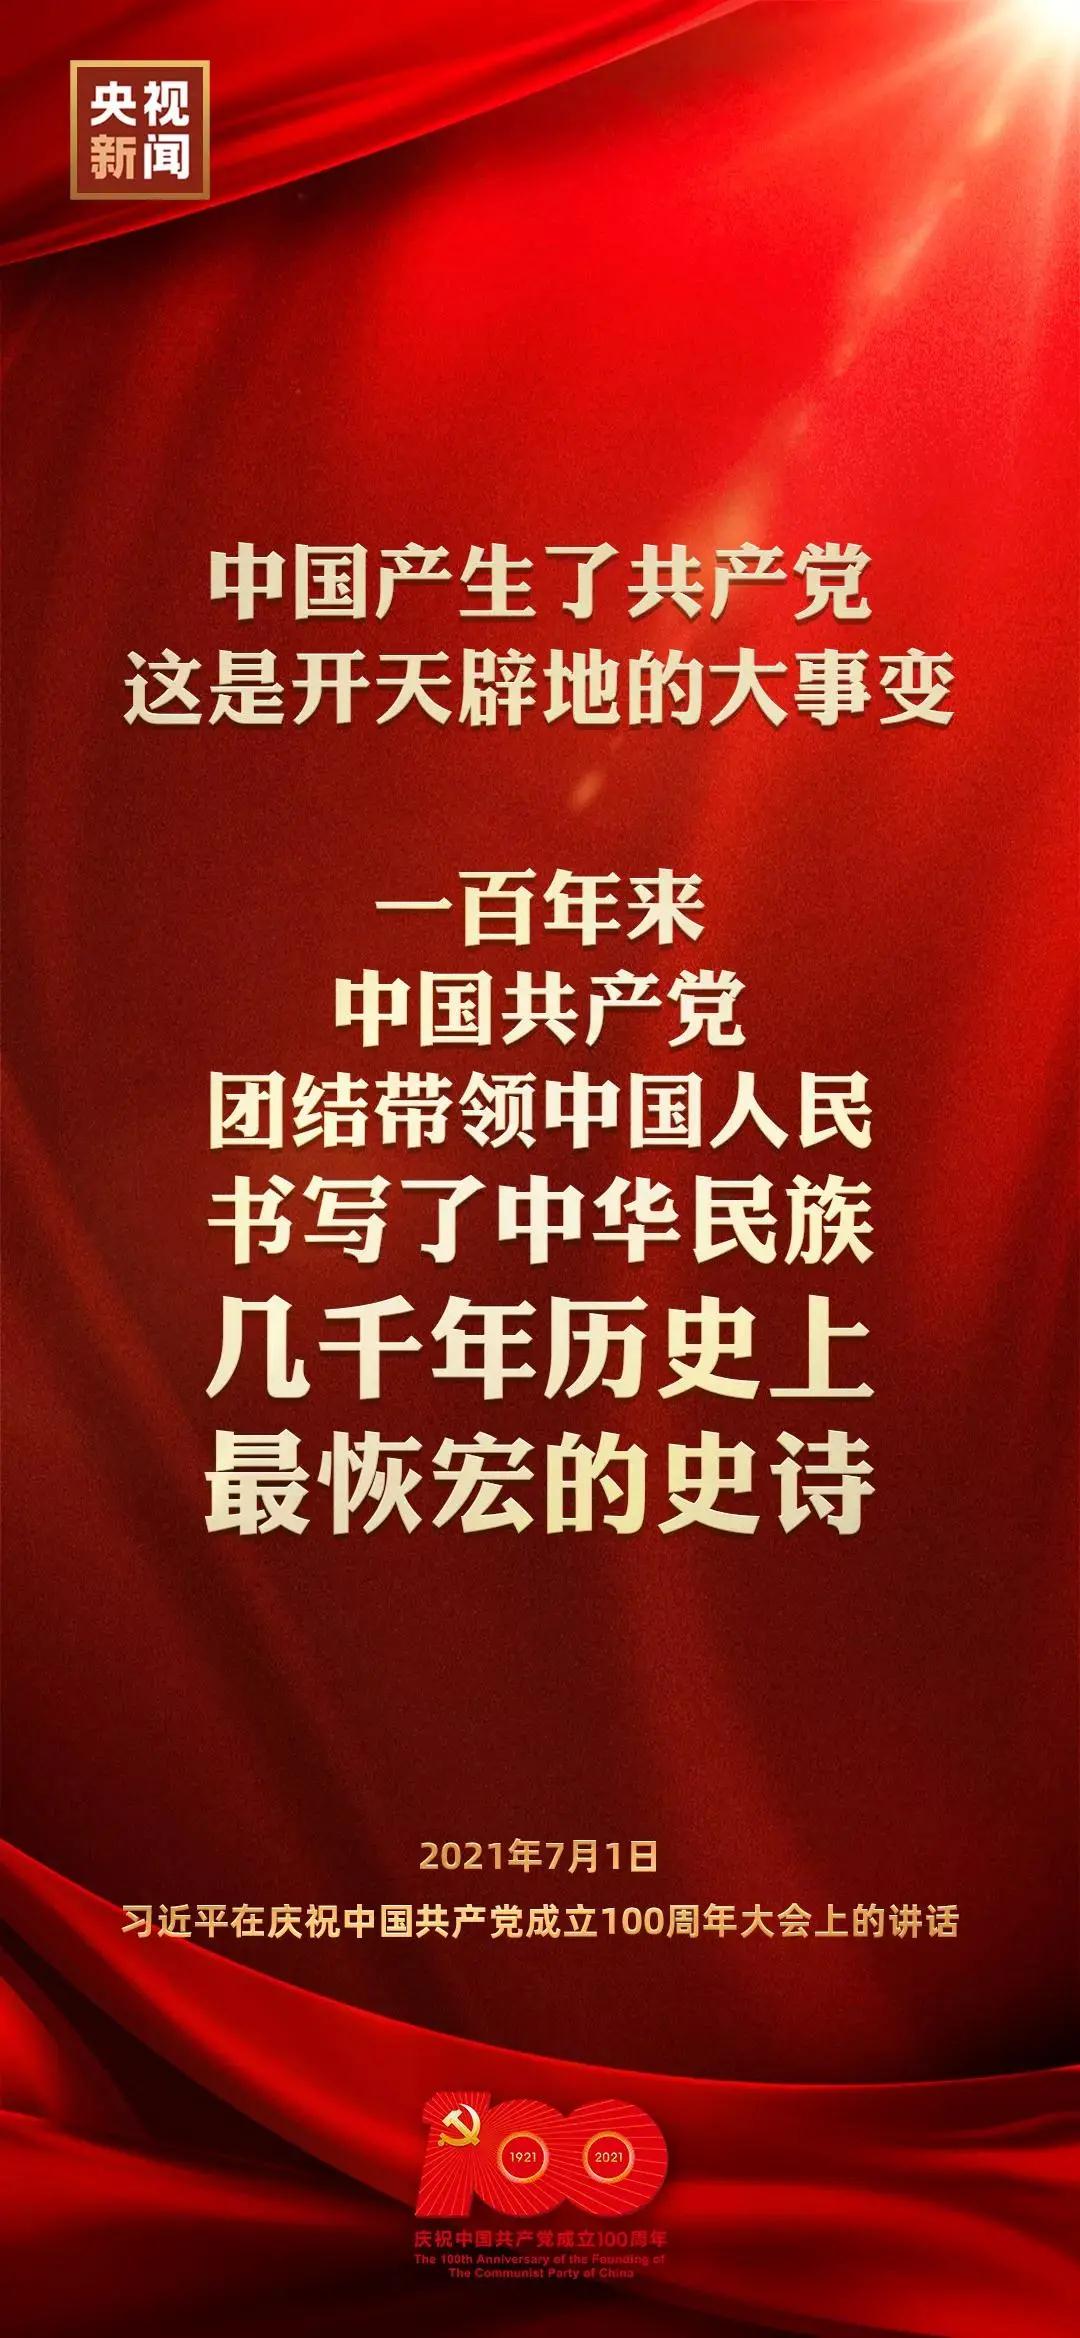 习近平在庆祝中国共产党成立100周年大会上发表重要讲话